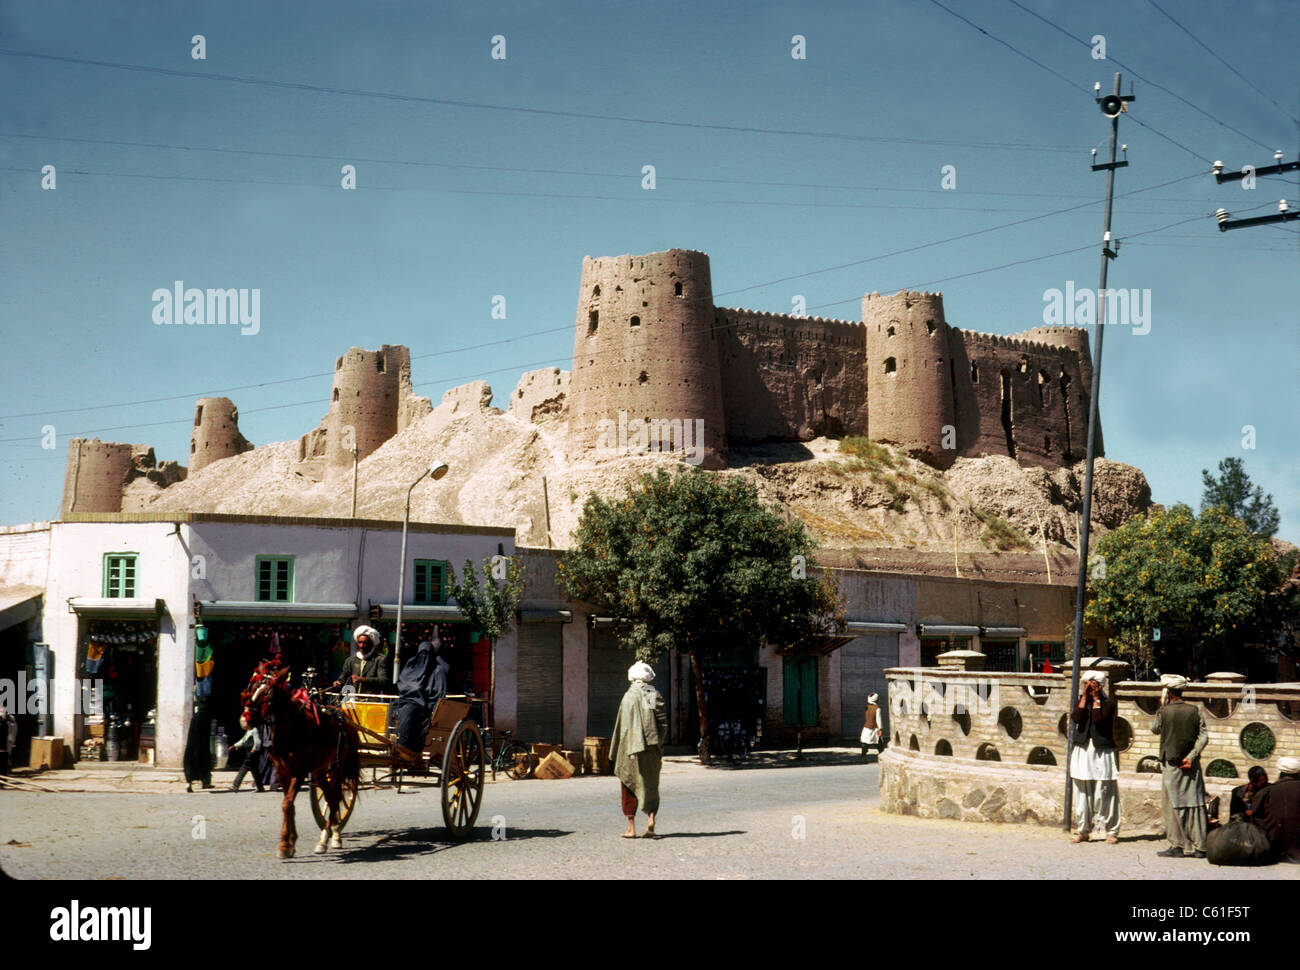 Scène de rue au-dessous de la Citadelle, Herat, Afghanistan, 1974. Également connu sous le nom de la Citadelle d'Alexandre, et localement comme Ikhtyaruddin Qala, il date de 330 avant JC et a été entièrement restauré en 2006-2011 Banque D'Images